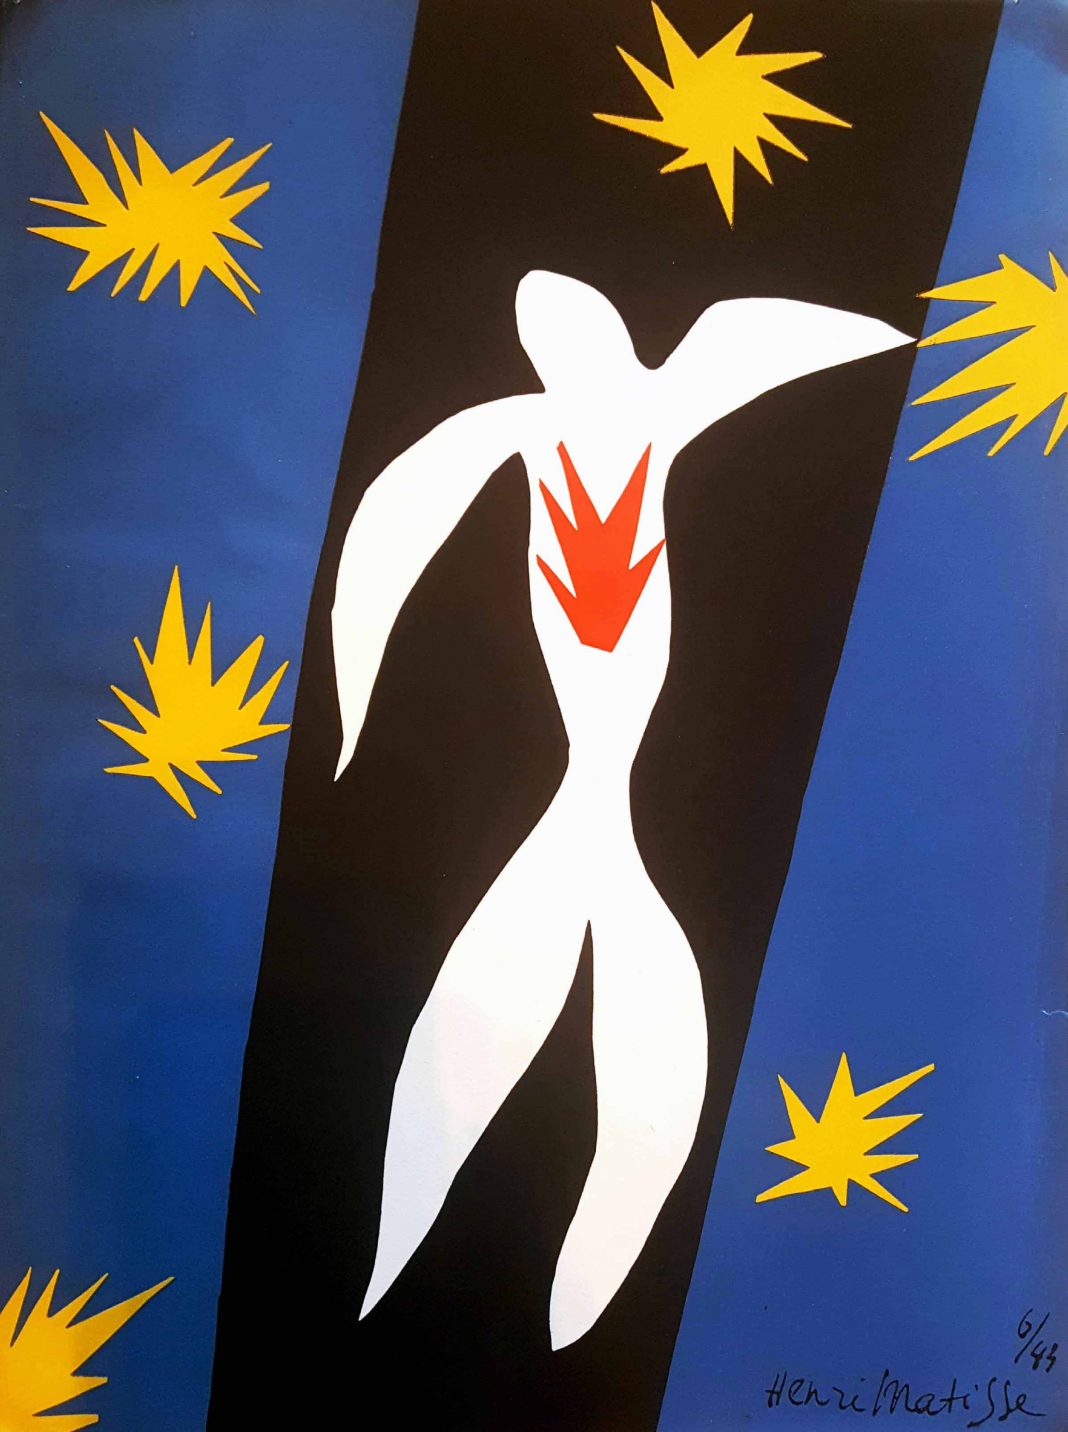 Le matite di Matisse. L’itinerario verso l’essenziale nei libri di un grande artista.https://www.exibart.com/repository/media/eventi/2018/03/le-matite-di-matisse.-l8217itinerario-verso-l8217essenziale-nei-libri-di-un-grande-artista-1068x1432.jpg